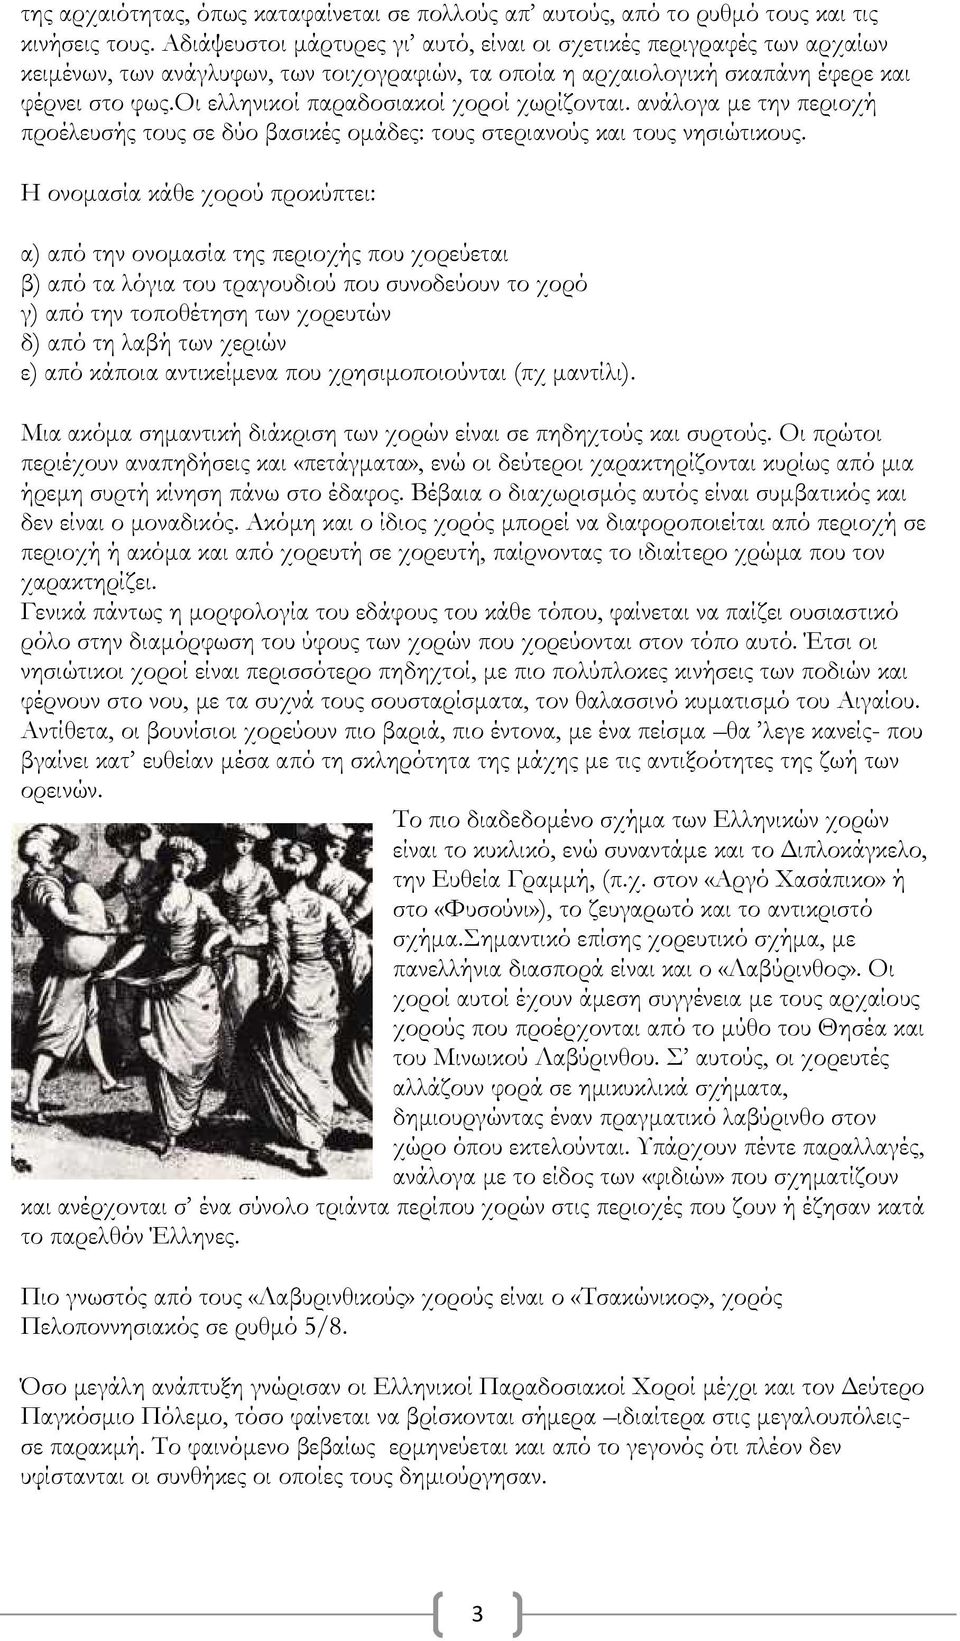 Πιο γνωστός από τους «Λαβυρινθικούς» χορούς είναι ο «Τσακώνικος», χορός  Πελοποννησιακός σε ρυθμό 5/8. - PDF Free Download